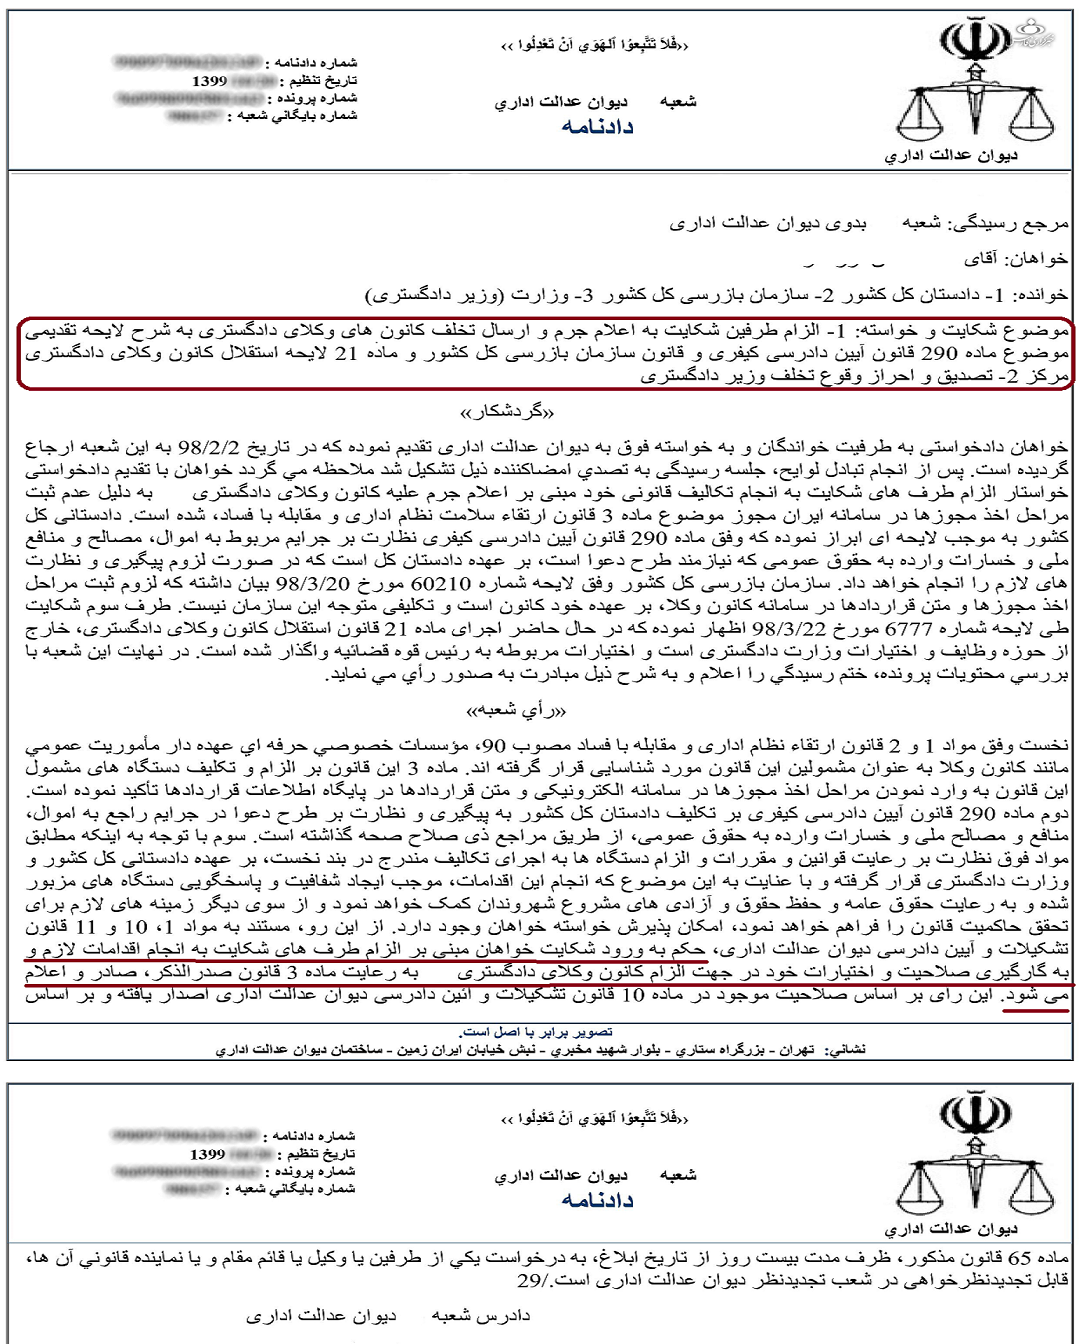  رأی منتشر شده در خبرگزاری فارس درباره الزام دادستان کل کشور و وزارت دادگستری به اعلام جرم علیه کانون وکلای دادگستری